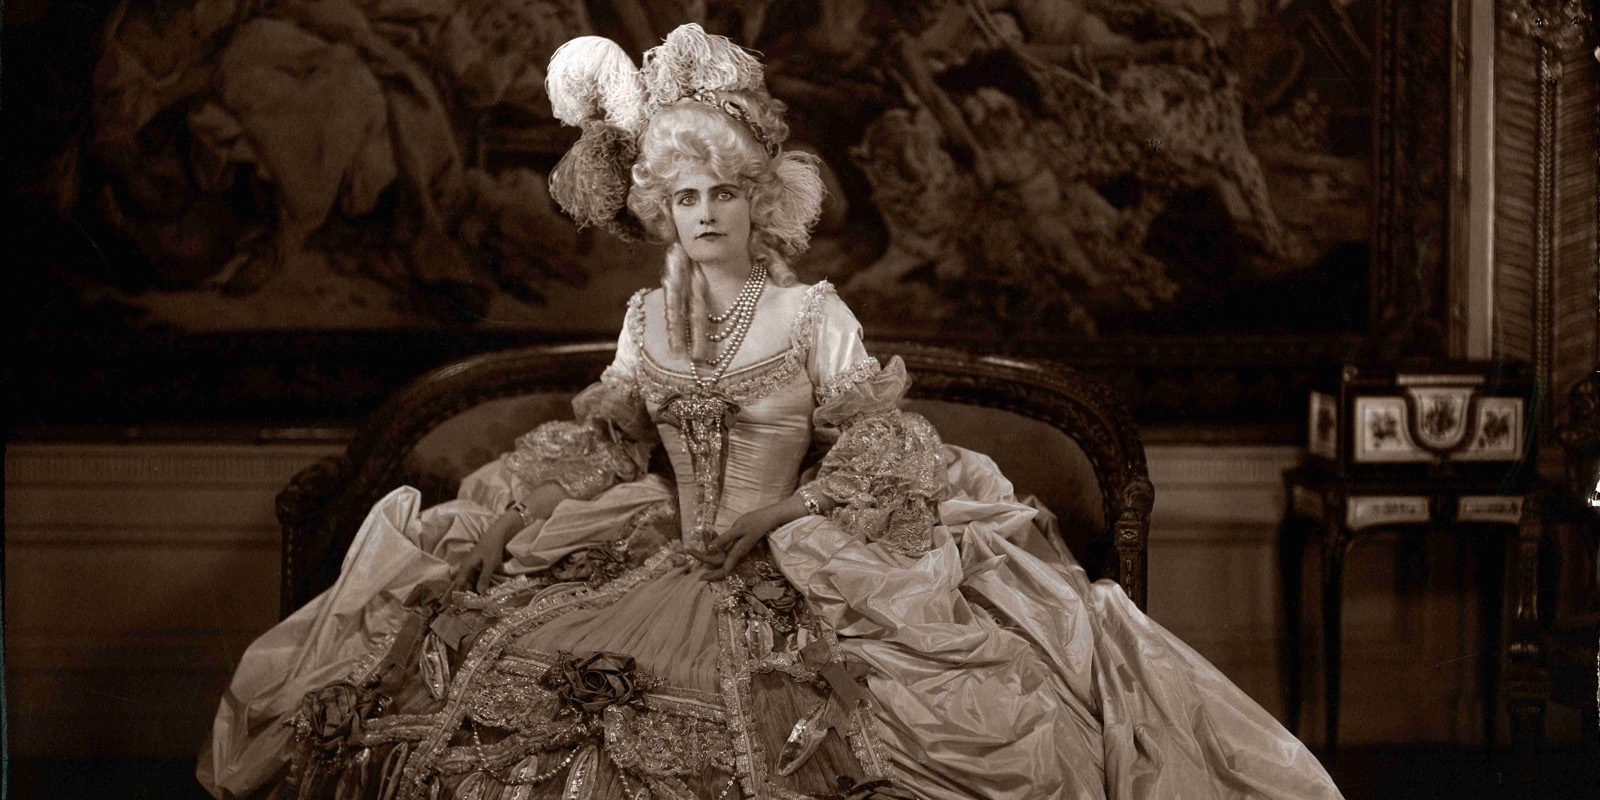 Marjorie Post in her Marie Antoinette costume